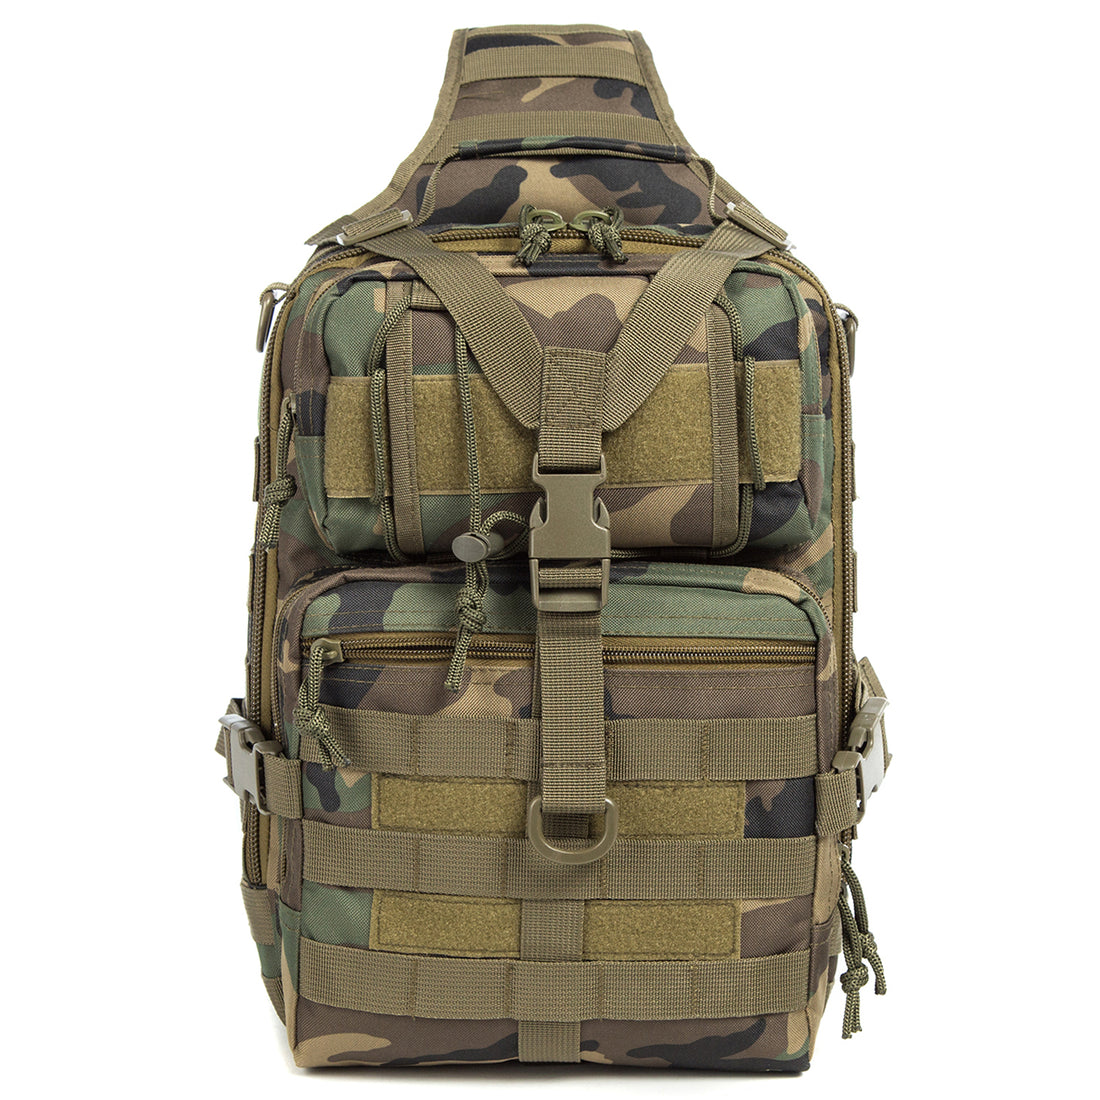 J.CARP Tactical EDC Sling Bag Pack, Military Rover Shoulder Molle